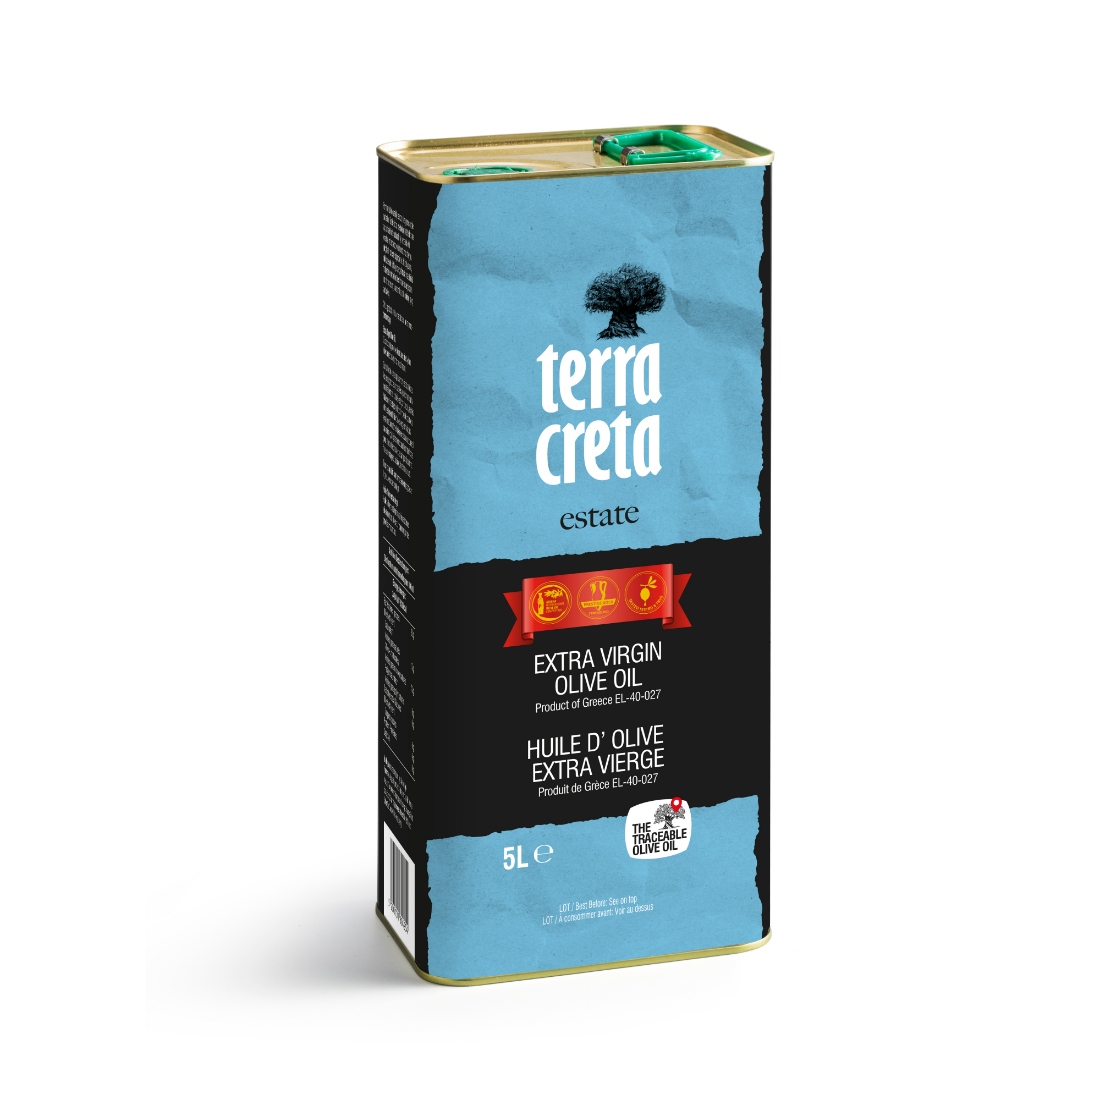 Olivový olej Terra Creta ESTATE Extra Panenský 5L 2020